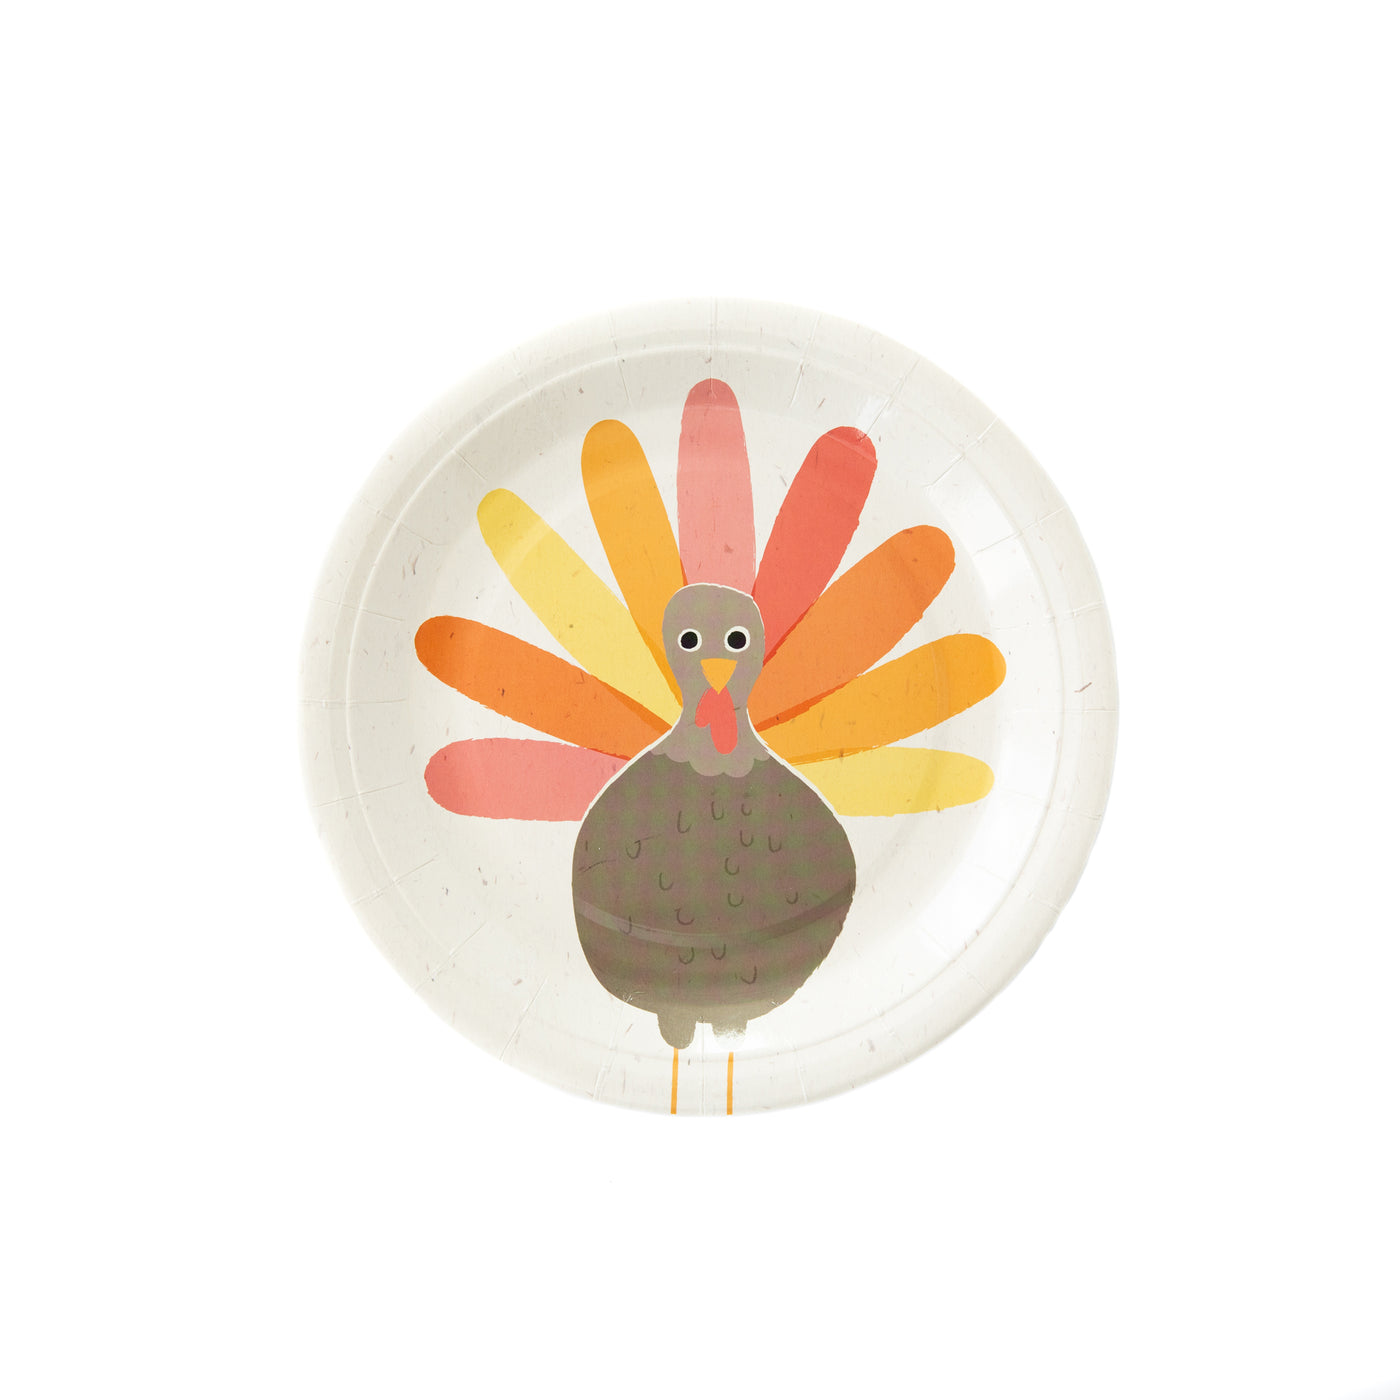 Fun Turkey 9" Paper Plates